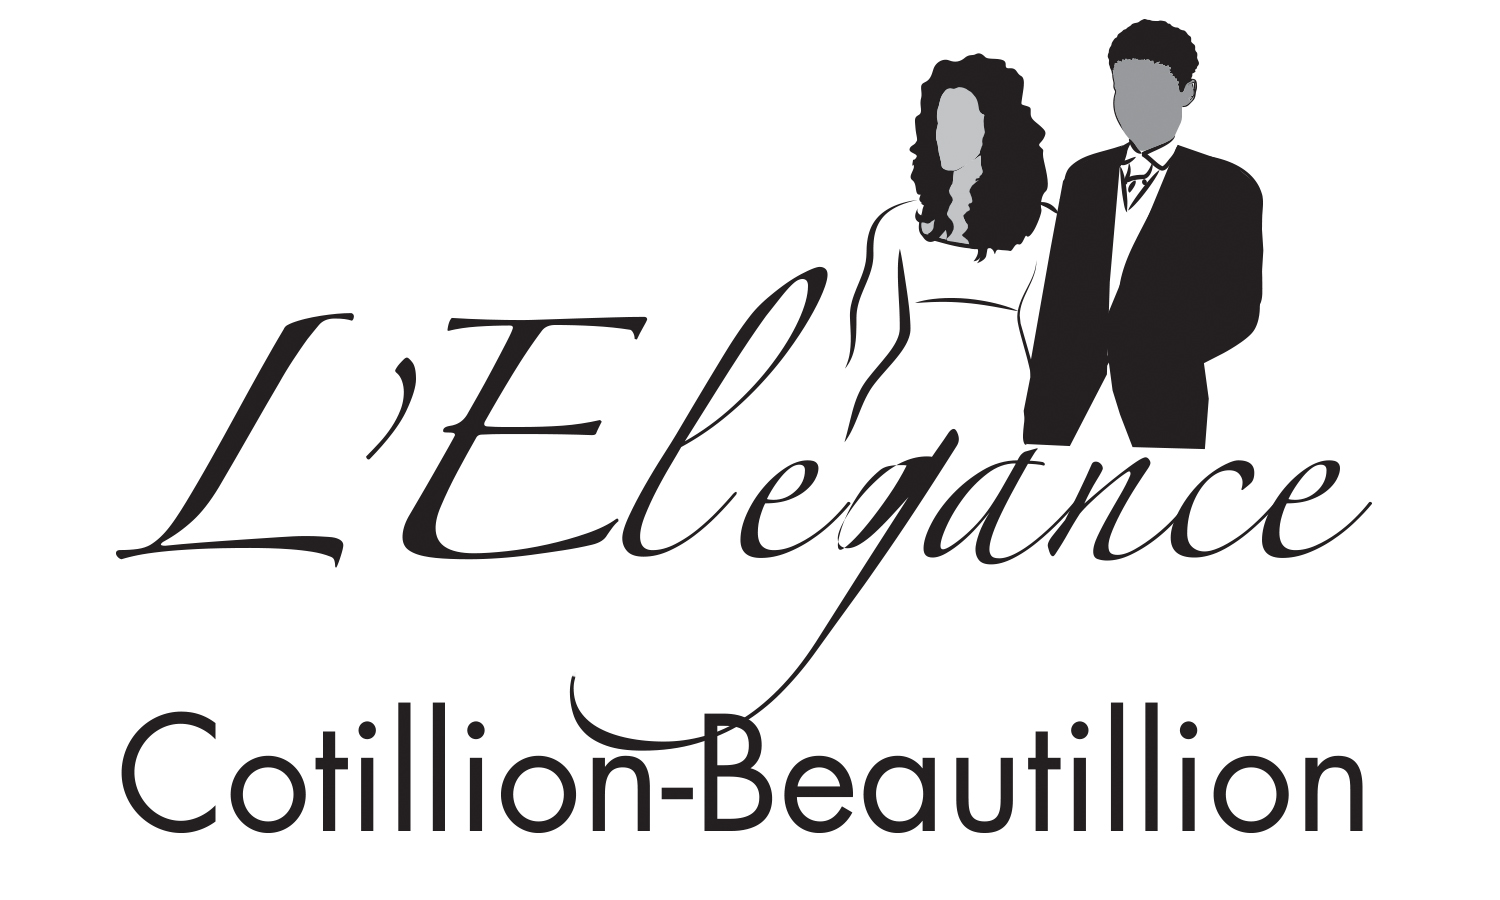 L'Elegance Cotillion-Beautillion